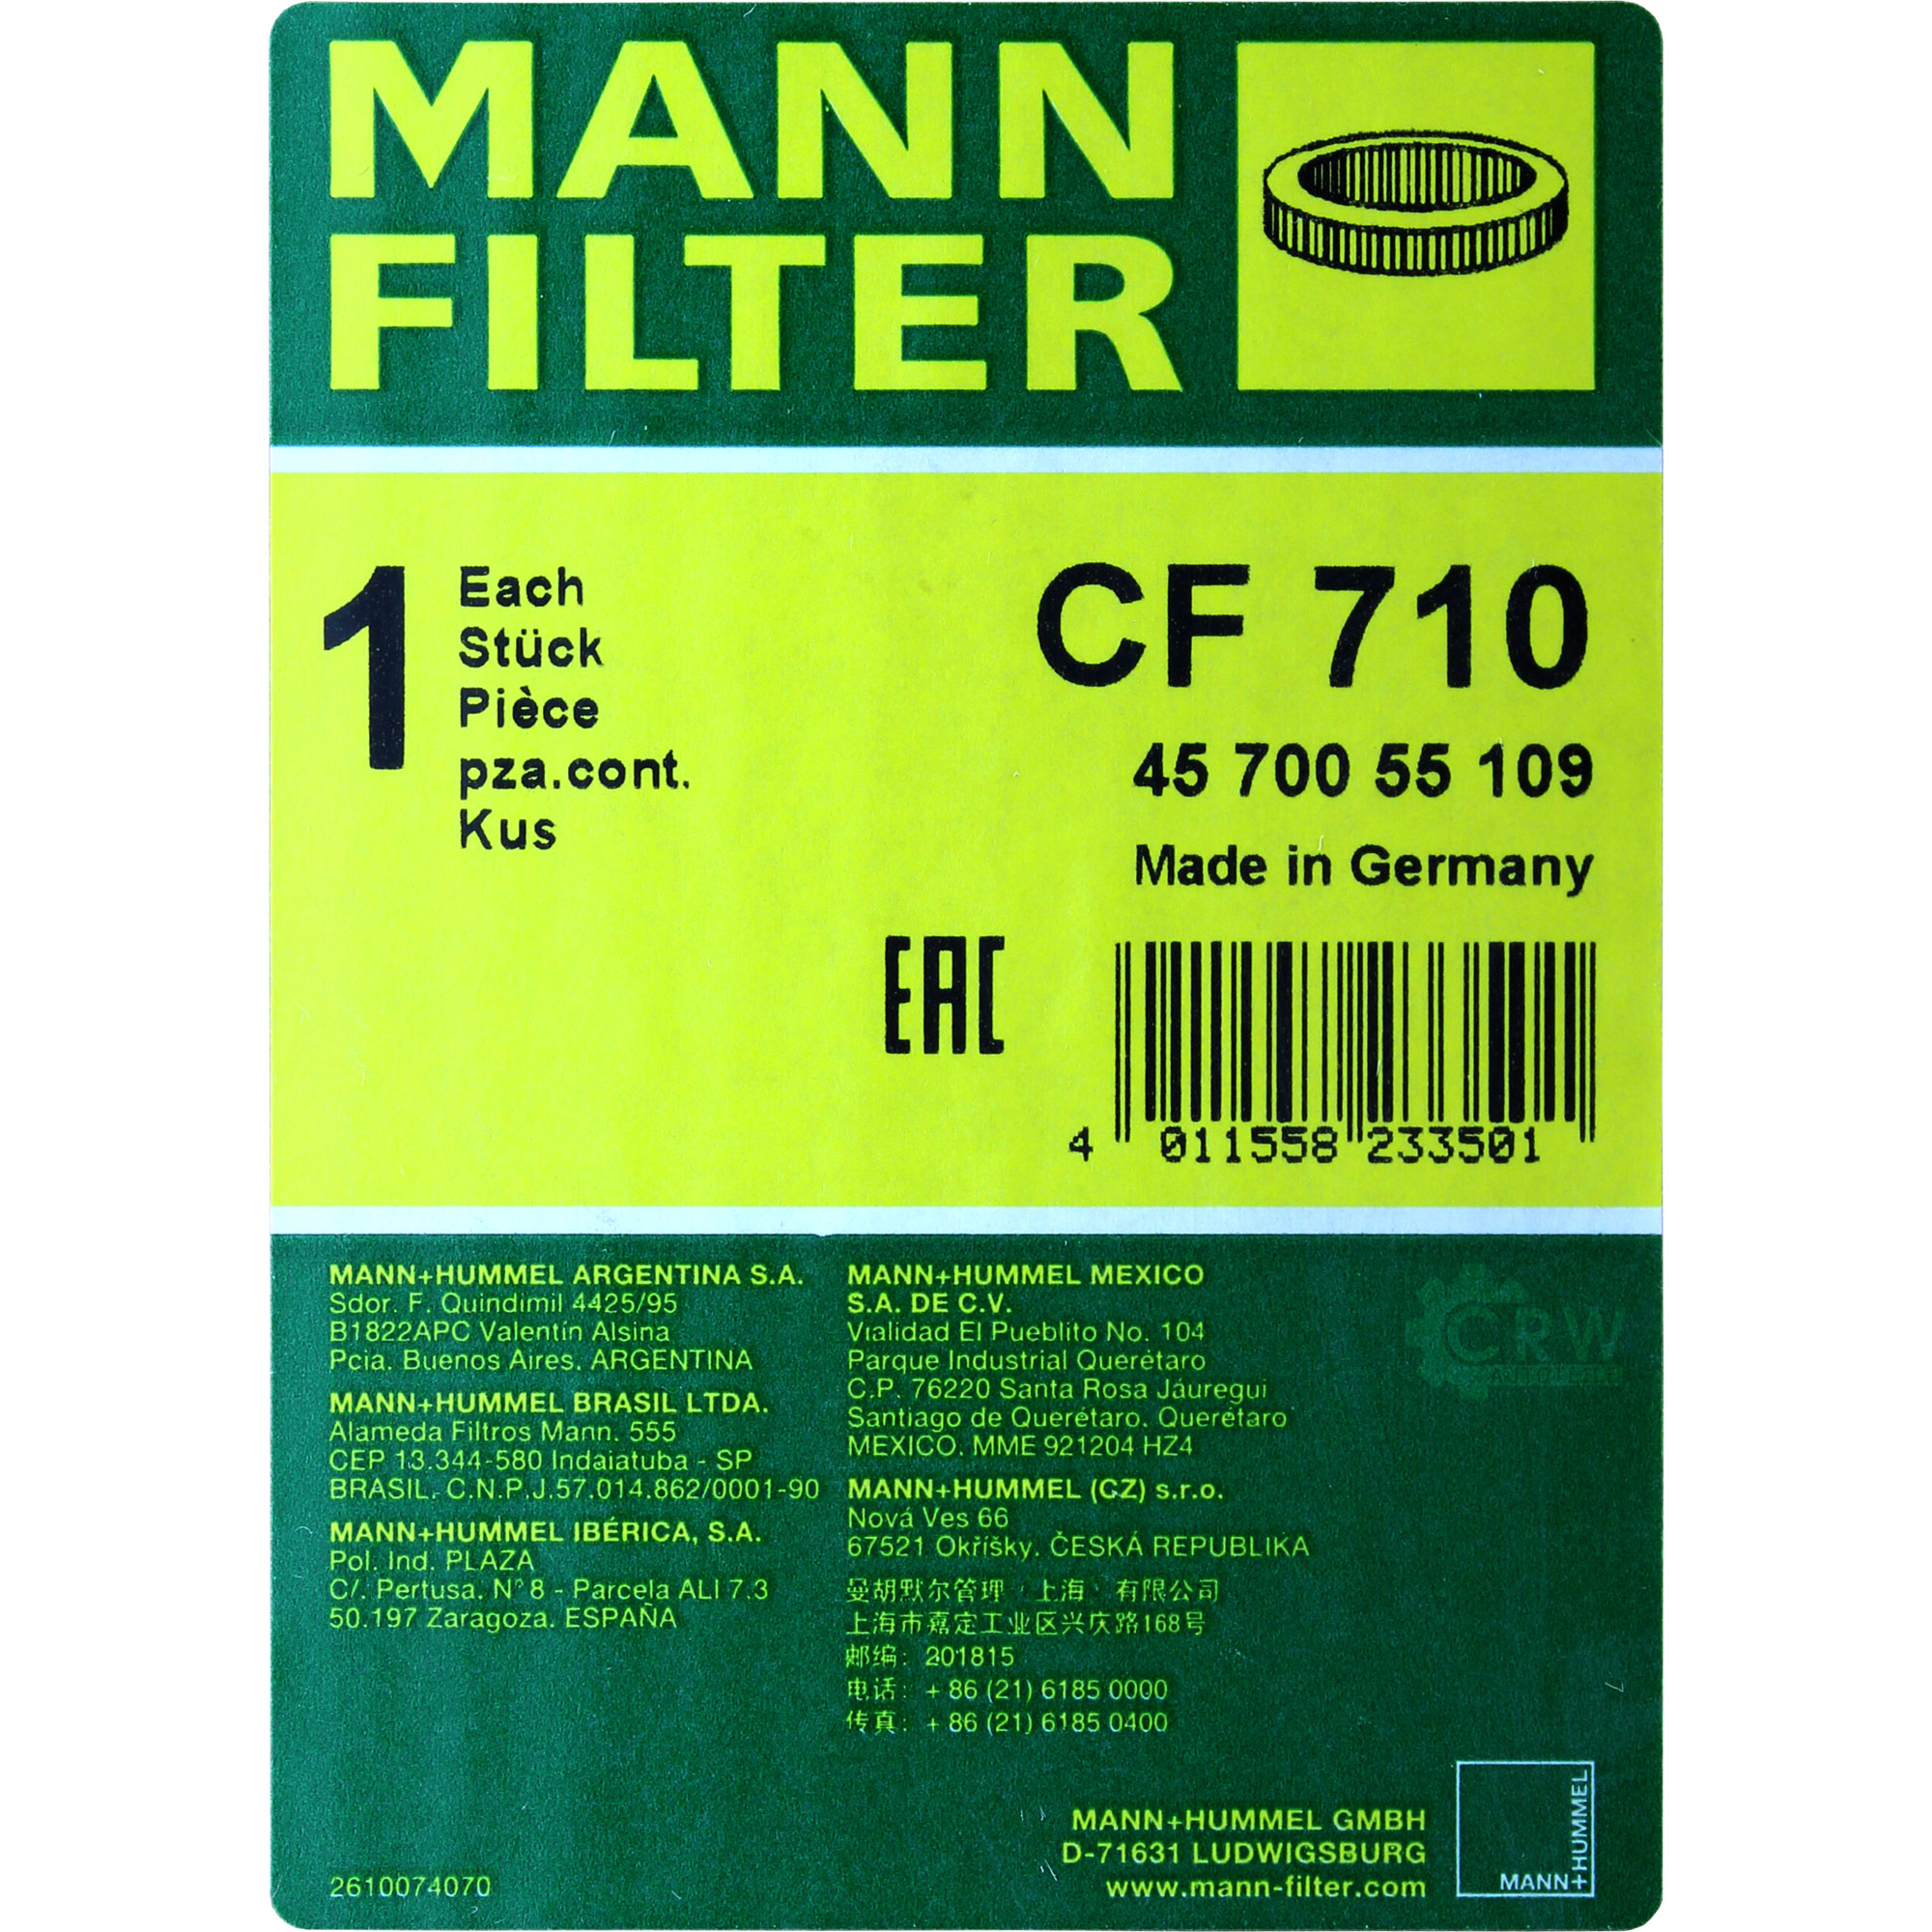 MANN-FILTER SekundärLuftfilter CF 710